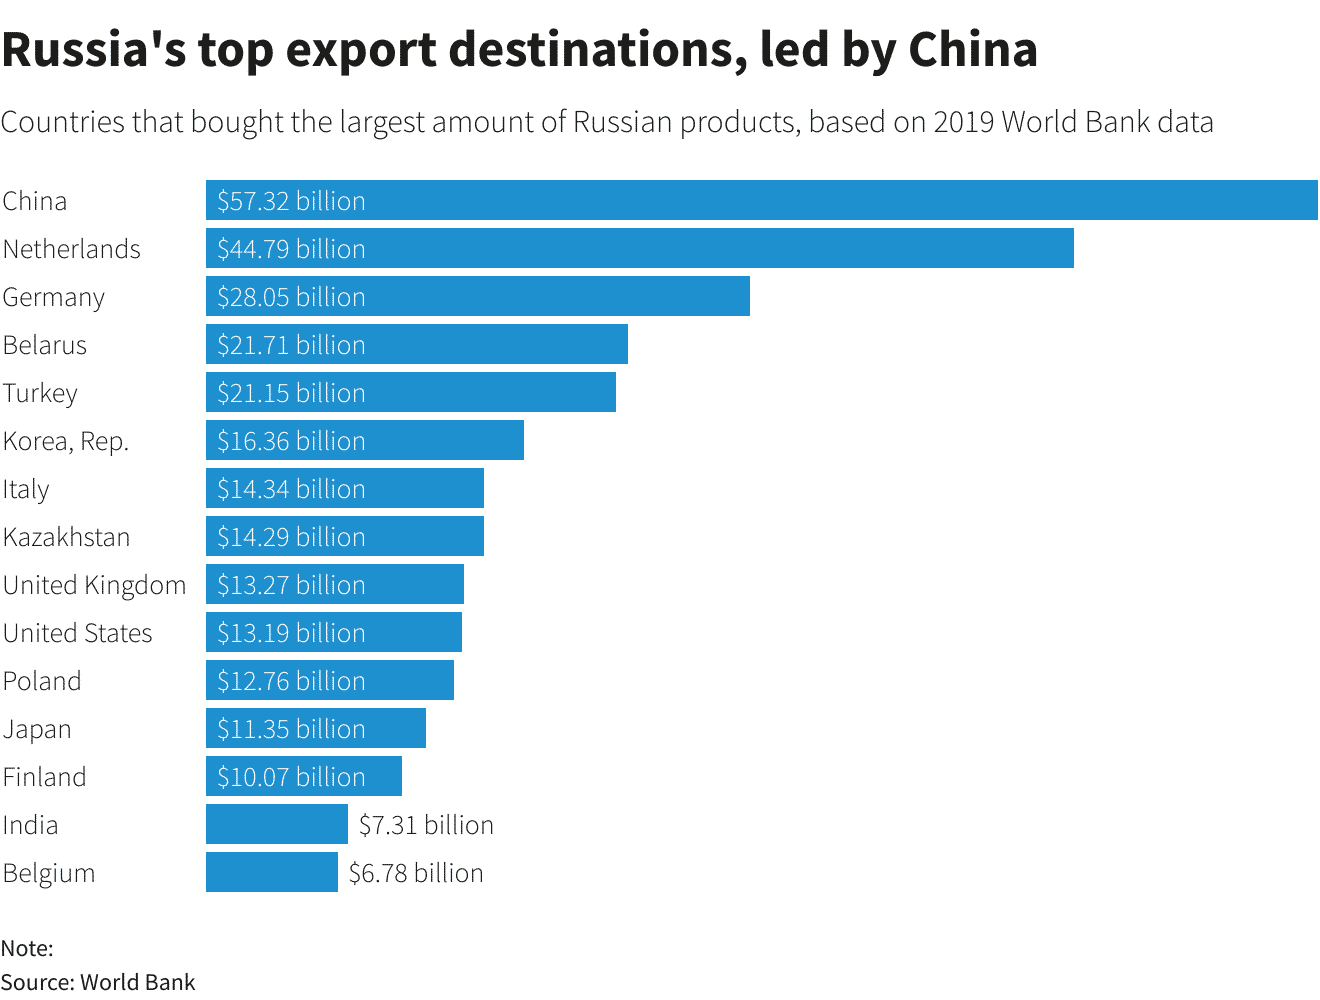 Les principales destinations d'exportation de la Russie, Chine en tête